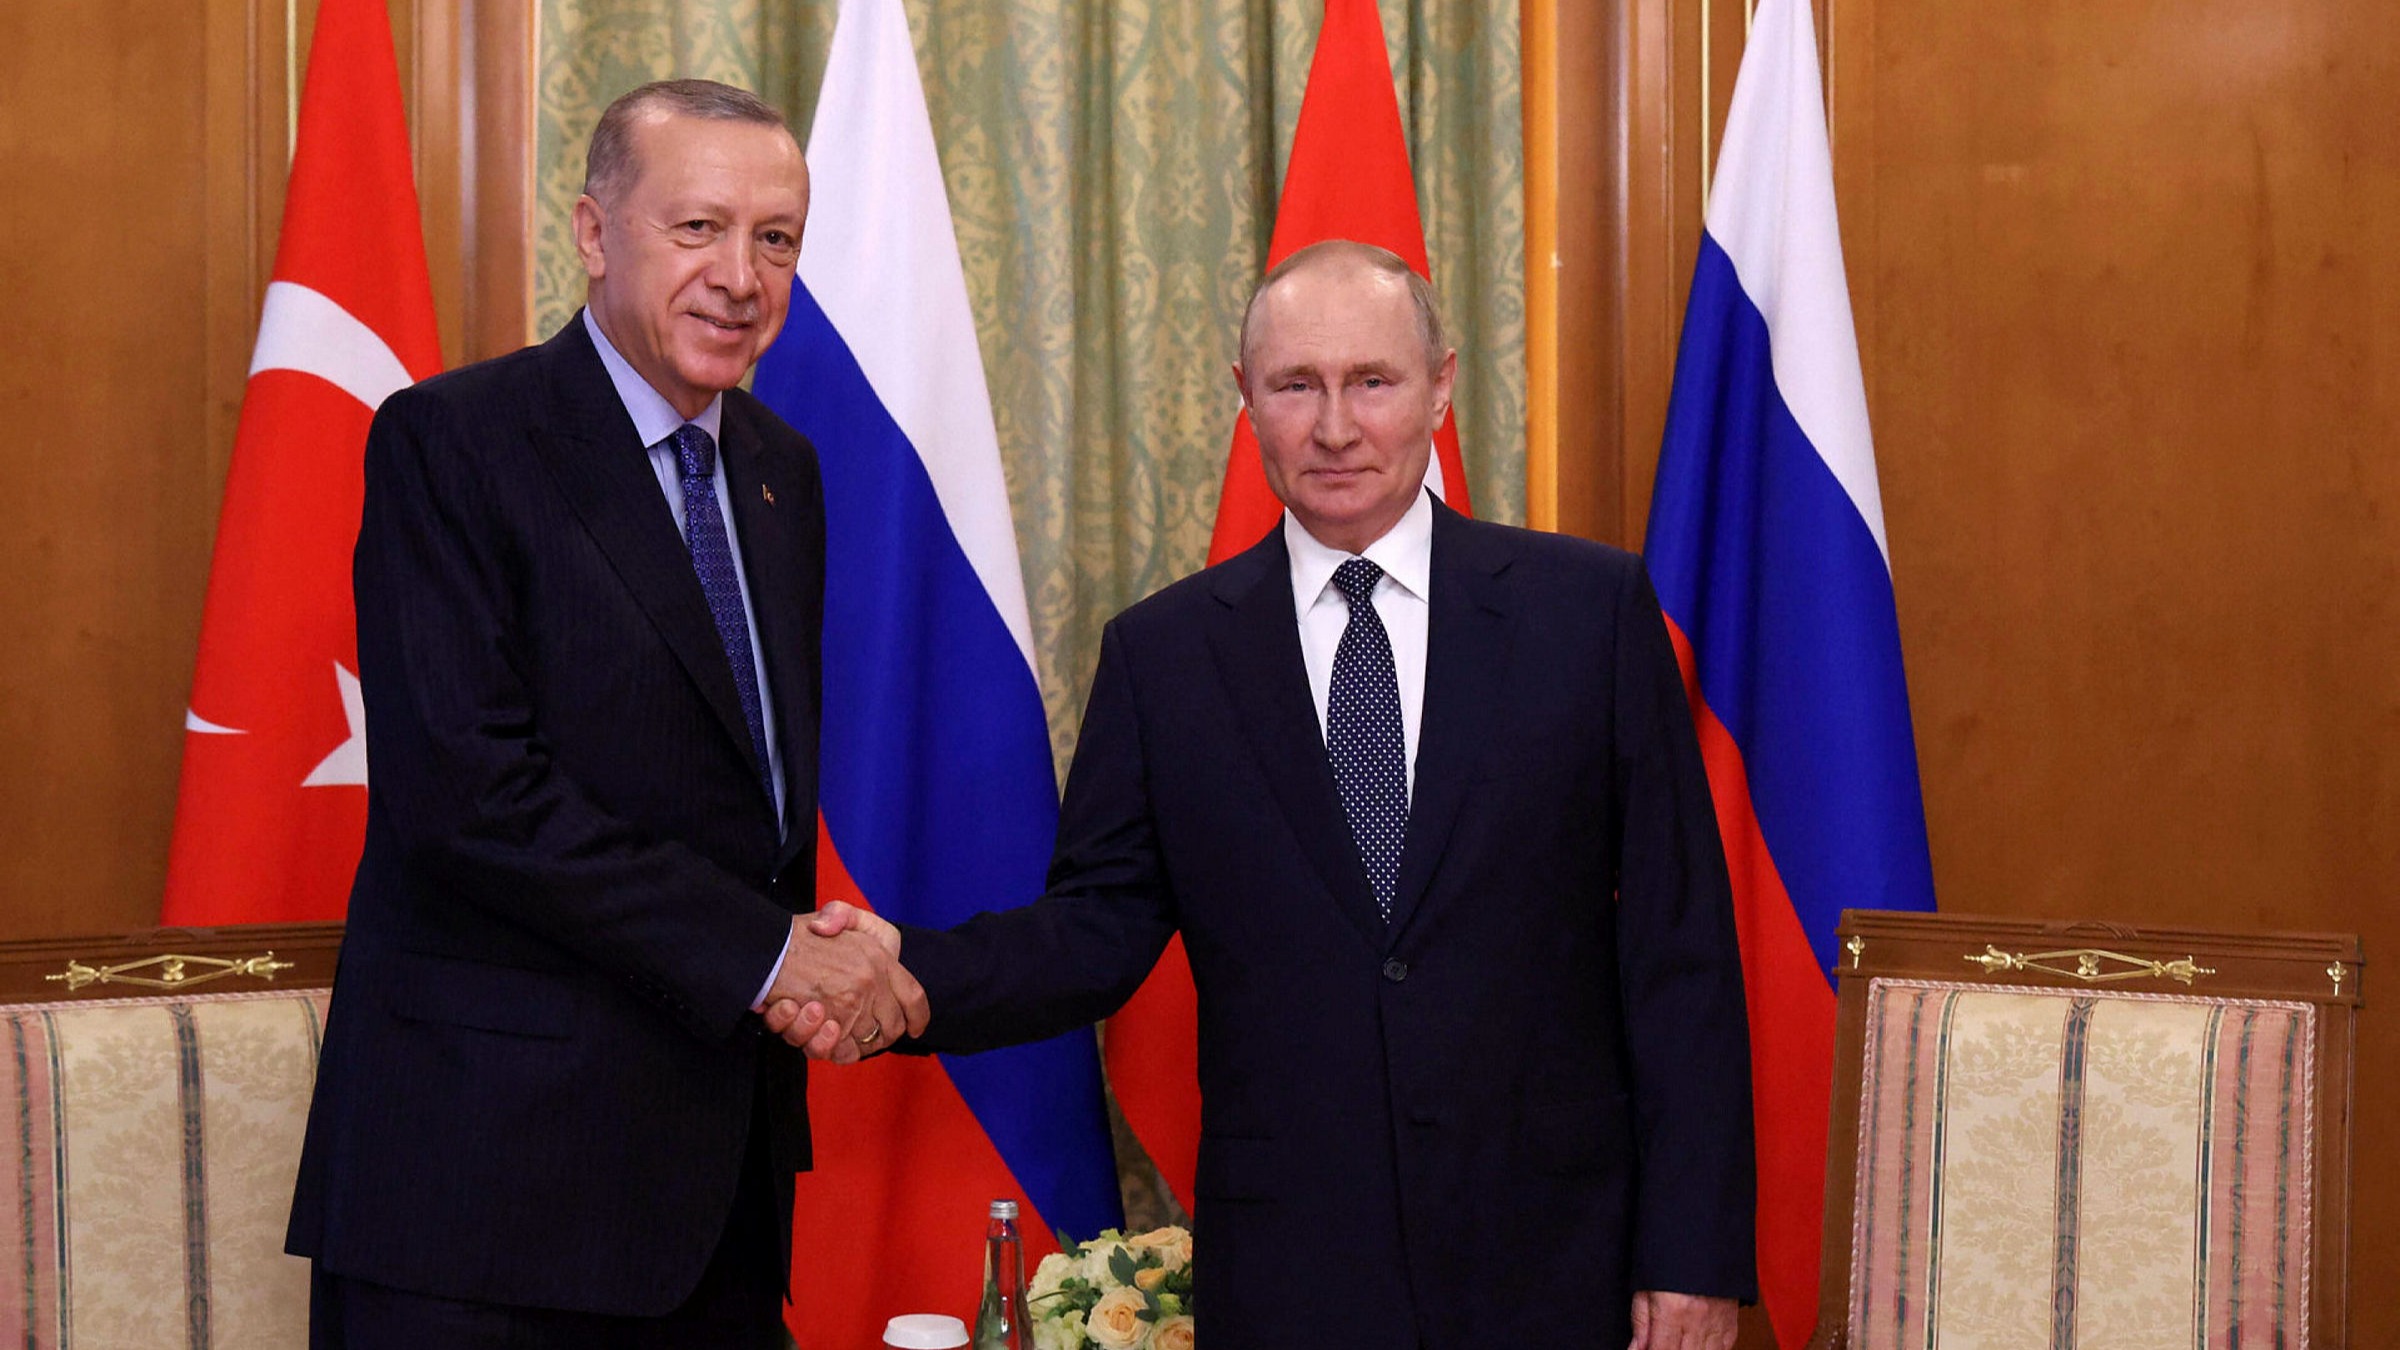 Β.Πούτιν σε Ρ.Τ.Ερντογάν: «Η νίκη σας είναι το φυσικό αποτέλεσμα του ανιδιοτελούς έργου σας ως επικεφαλής της Τουρκίας»